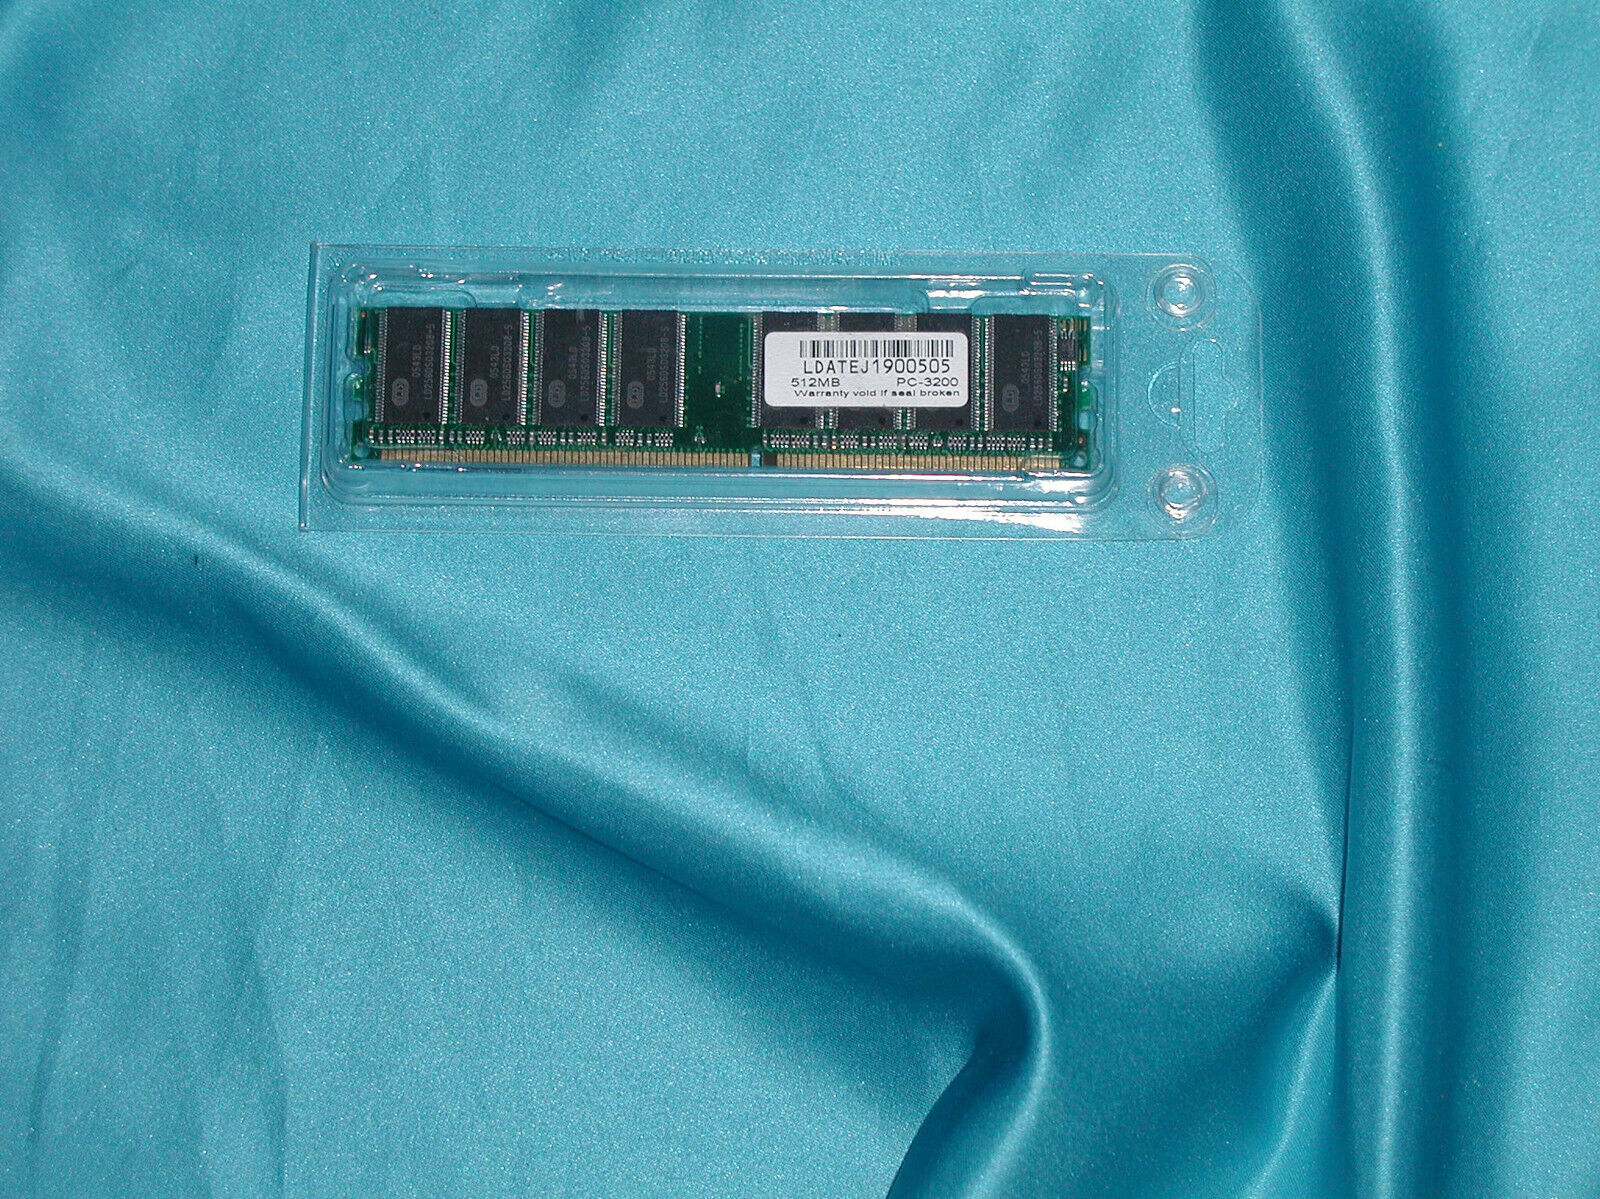 LDATEJ1900505 PC3200 512MB DDR SDRAM RARE OEM (LD) “Factory New Great SALE” WOW